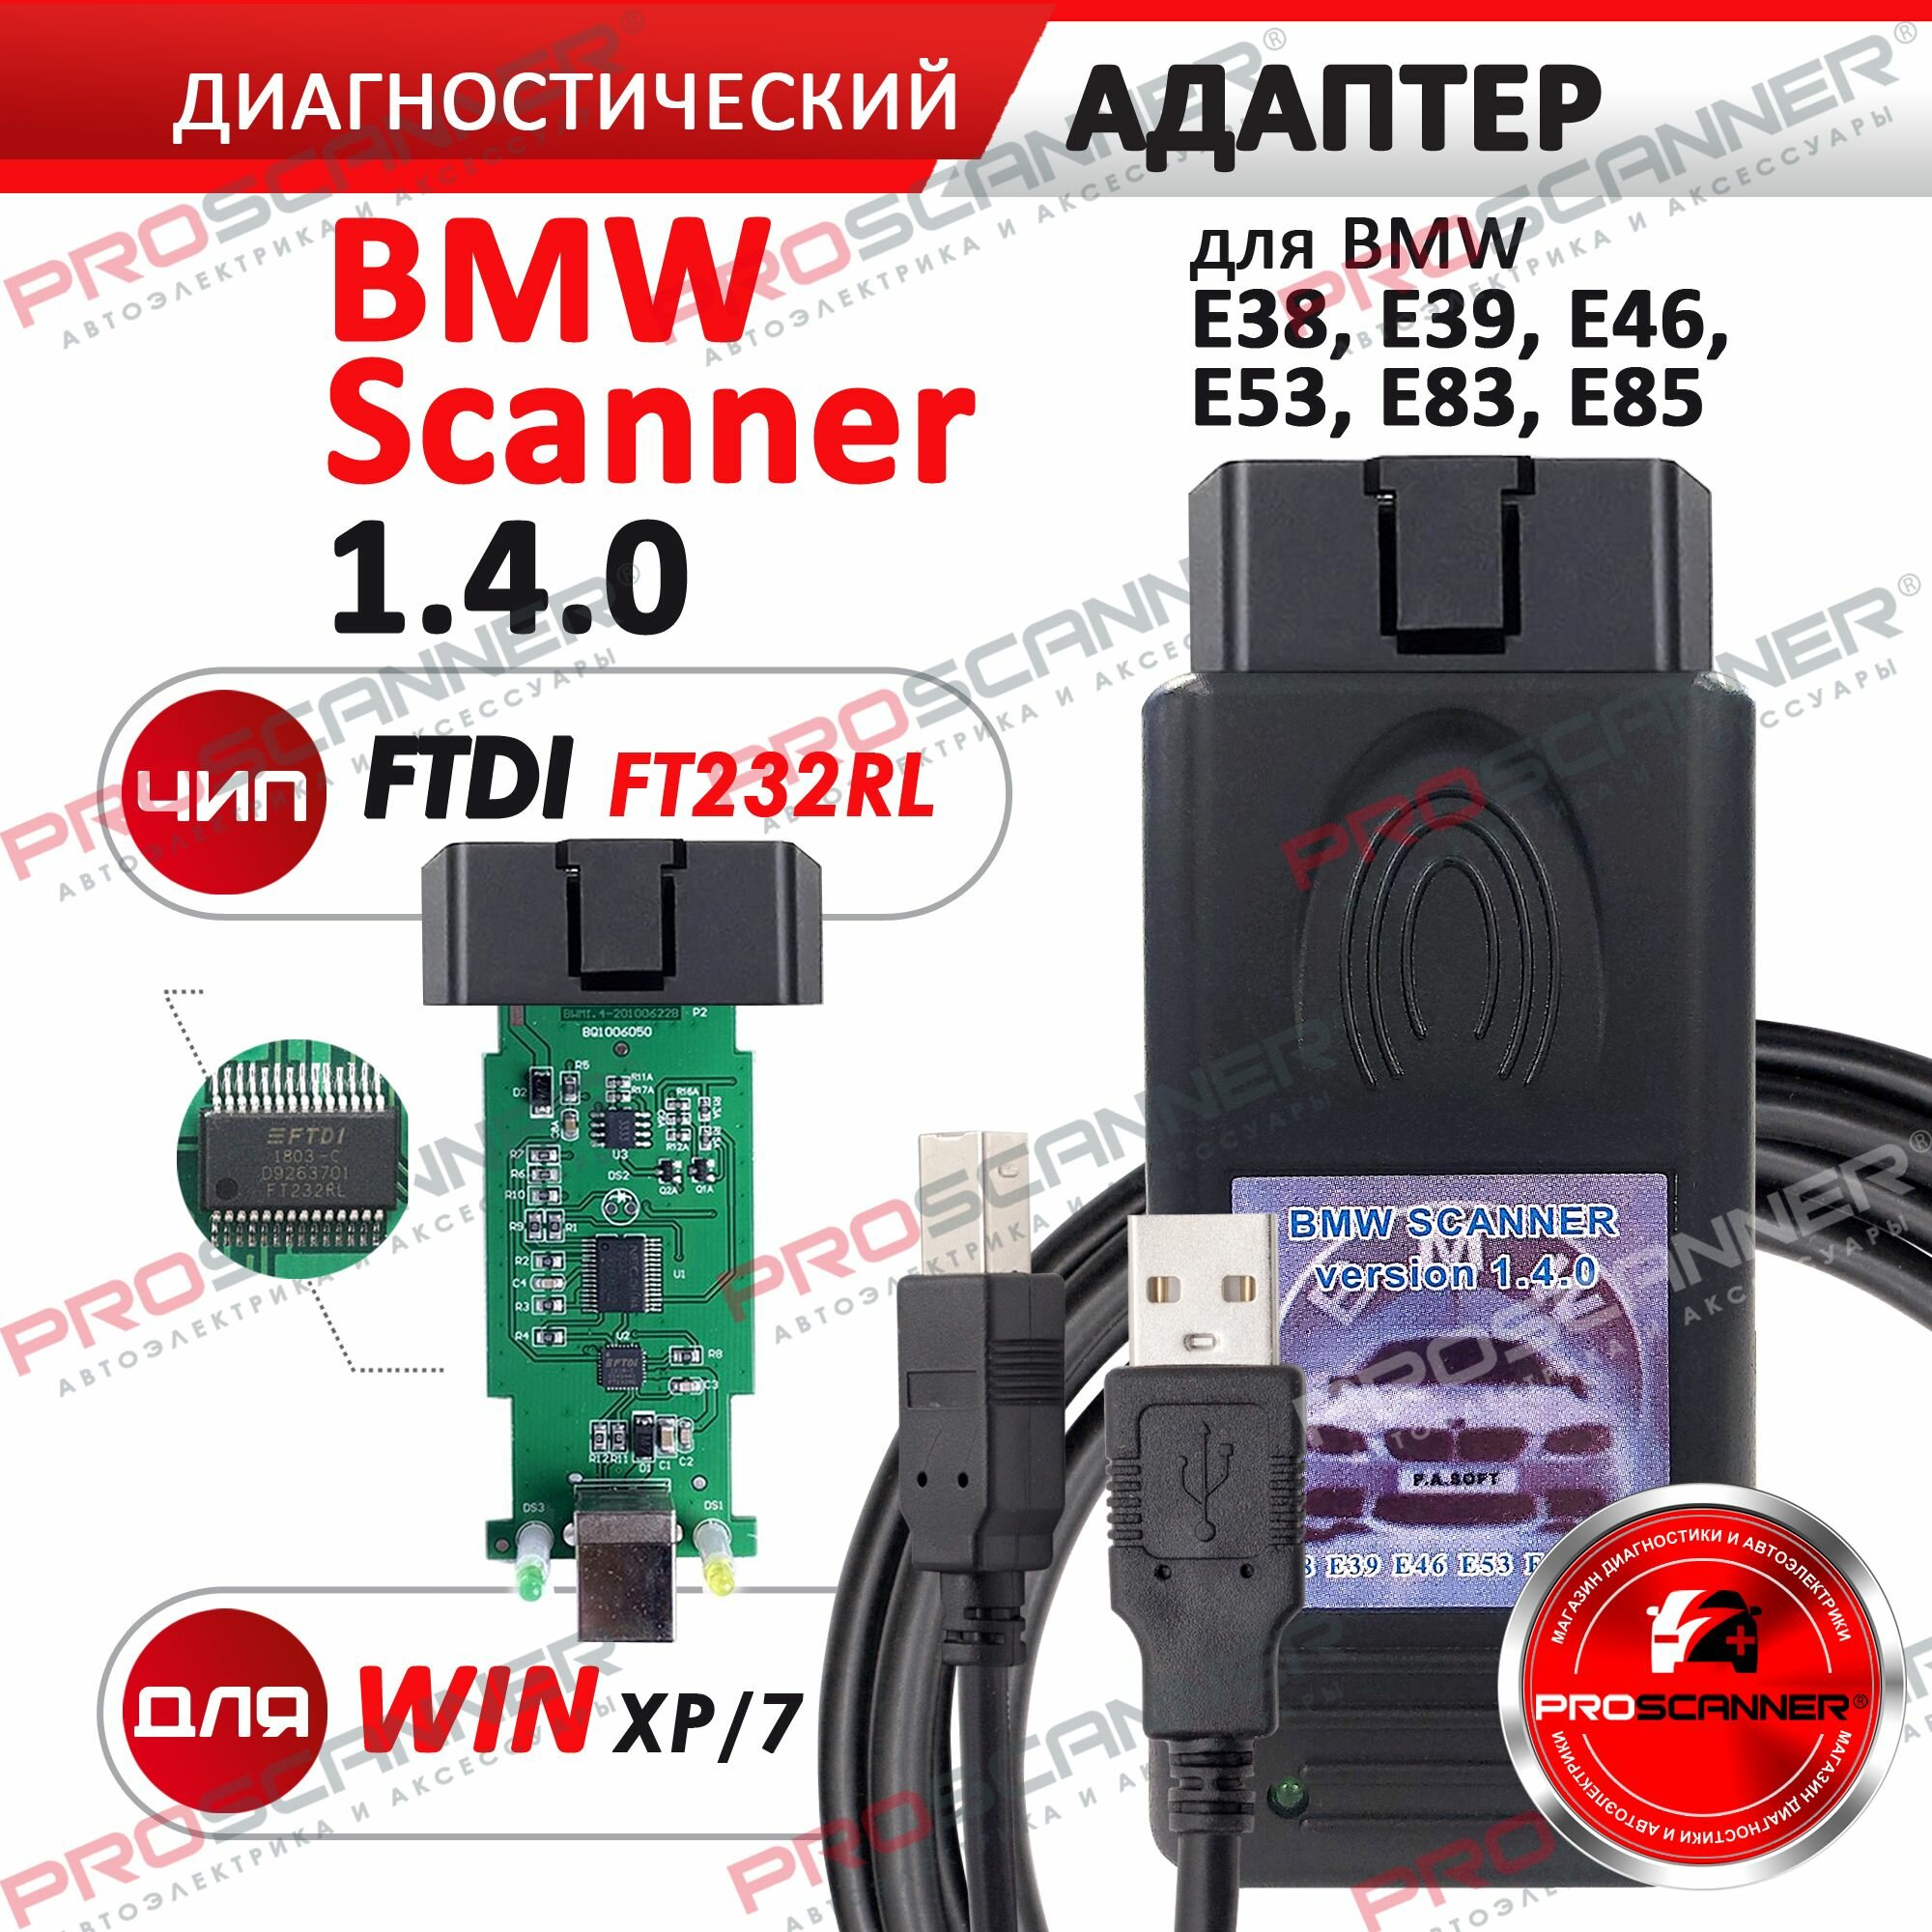 Автосканер BMW Scanner 1.4 (E38, E39, E46, E53, E83, E85) / Диагностический адаптер